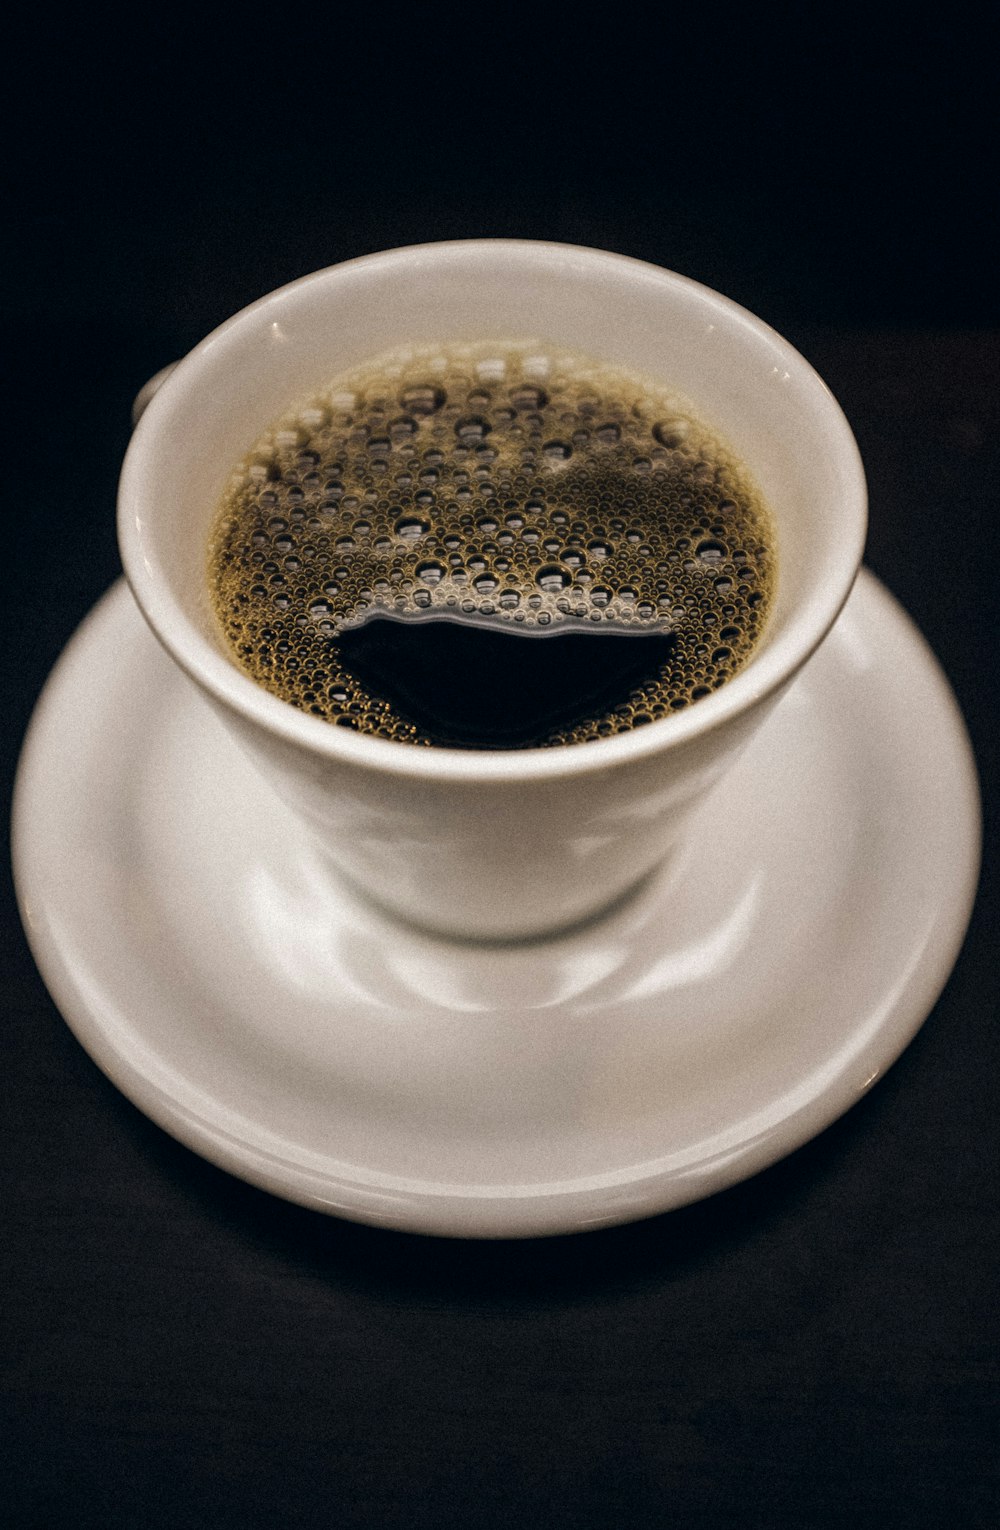 white ceramic mug with black coffee